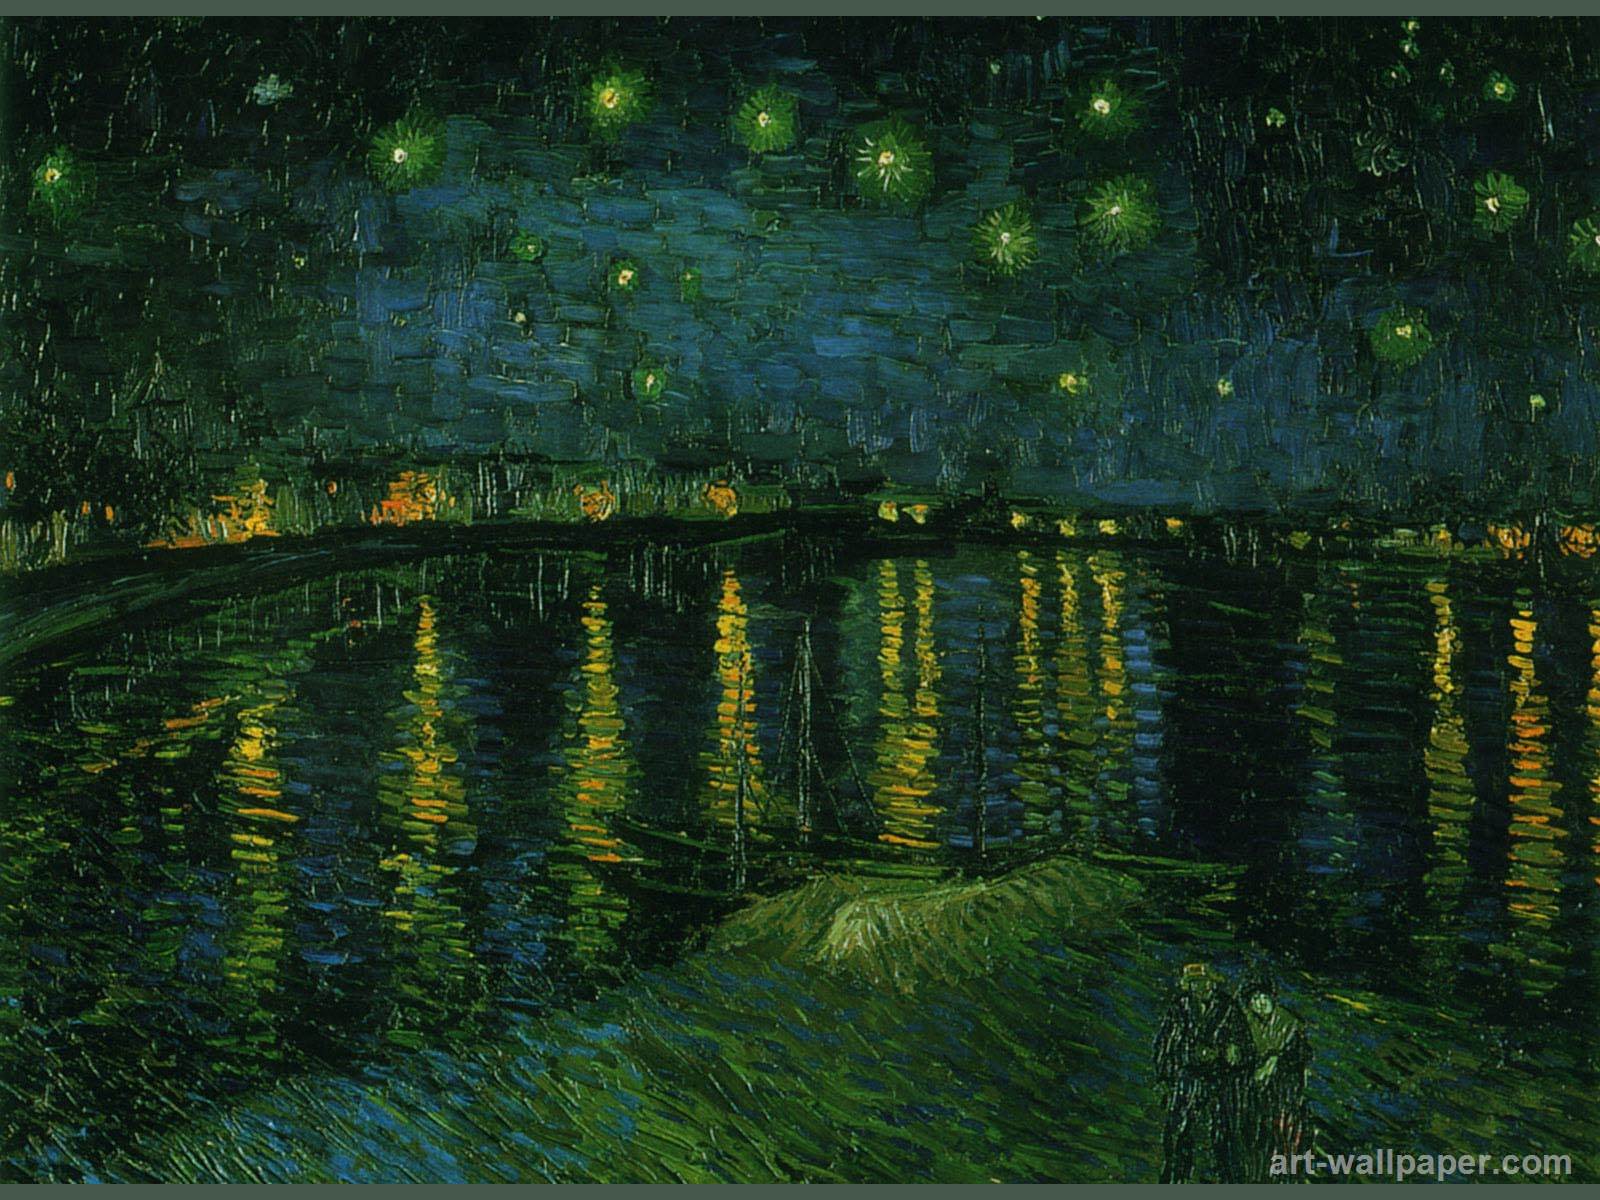 Bạn đang tìm kiếm những hình nền máy tính đẹp mắt cho bộ sưu tập của mình? Chúng tôi đề xuất những hình nền mang phong cách nghệ sĩ Van Gogh, đầy màu sắc và tinh tế. Tải ngay những bức tranh nổi tiếng của Van Gogh làm hình nền để truyền cảm hứng cho ngày mới sôi động.